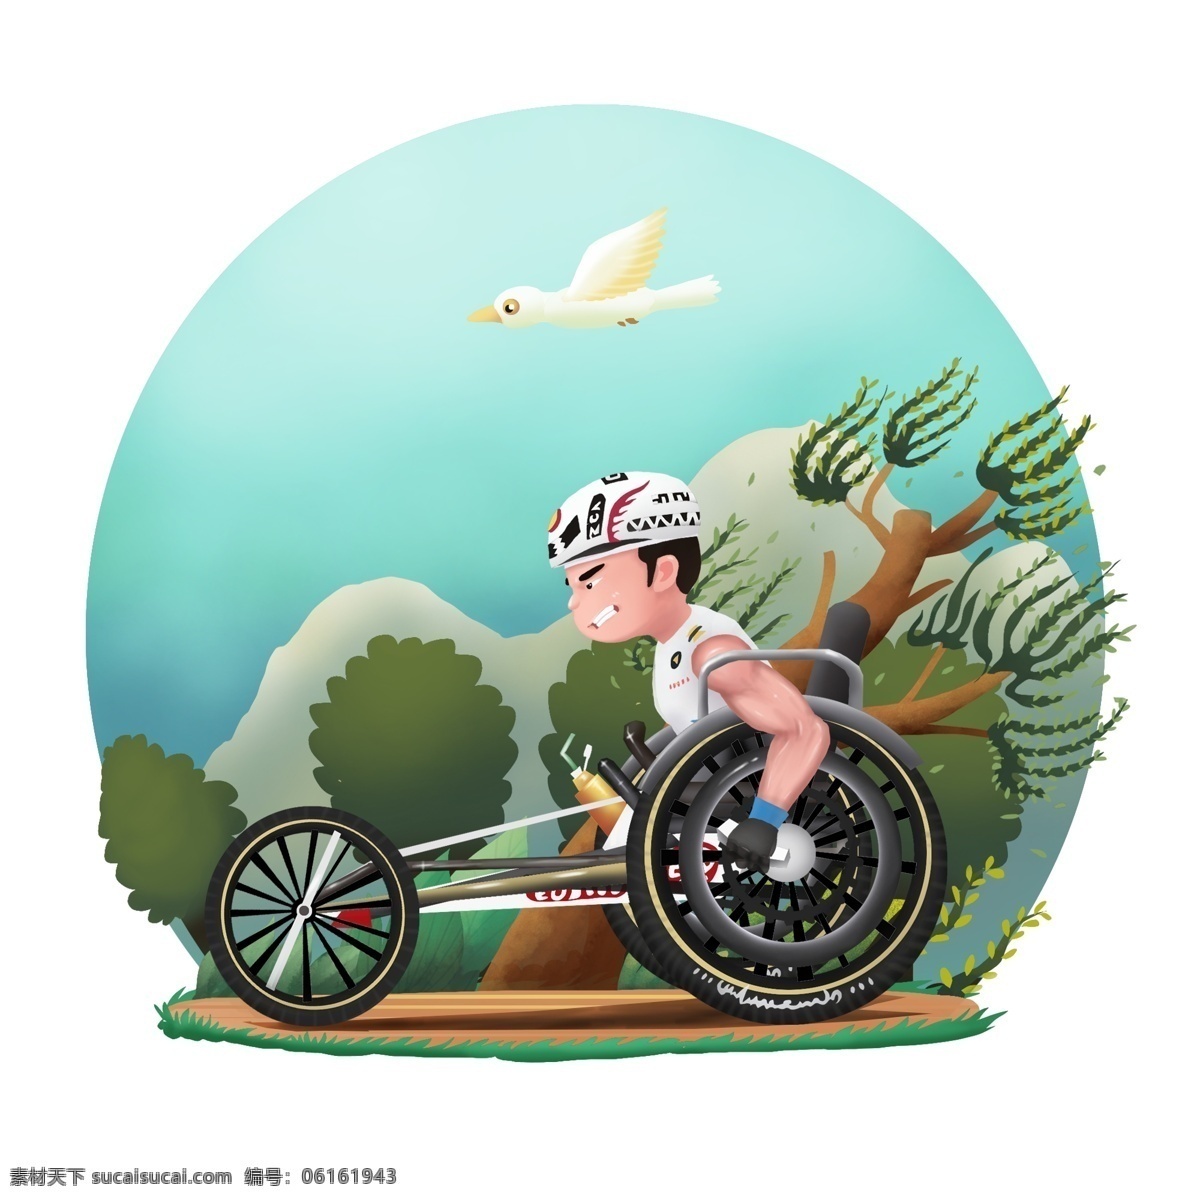 商用 高清 手绘 残疾人 运动员 赛车 比赛 赛车比赛 可商用